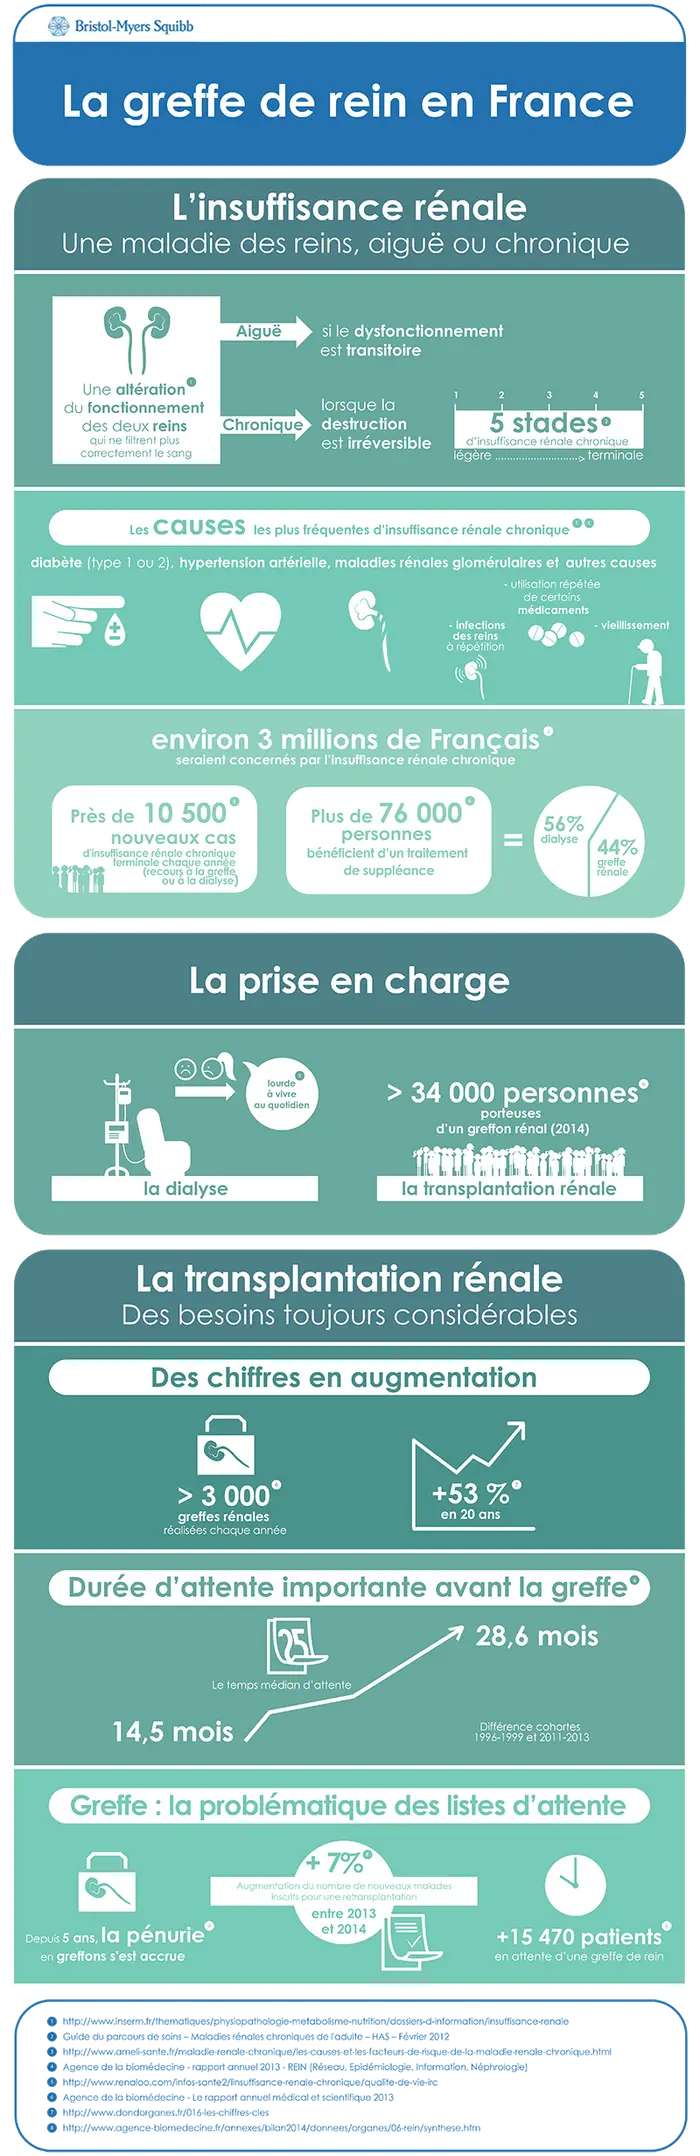 La transplantation rénale en France : des besoins toujours croissants